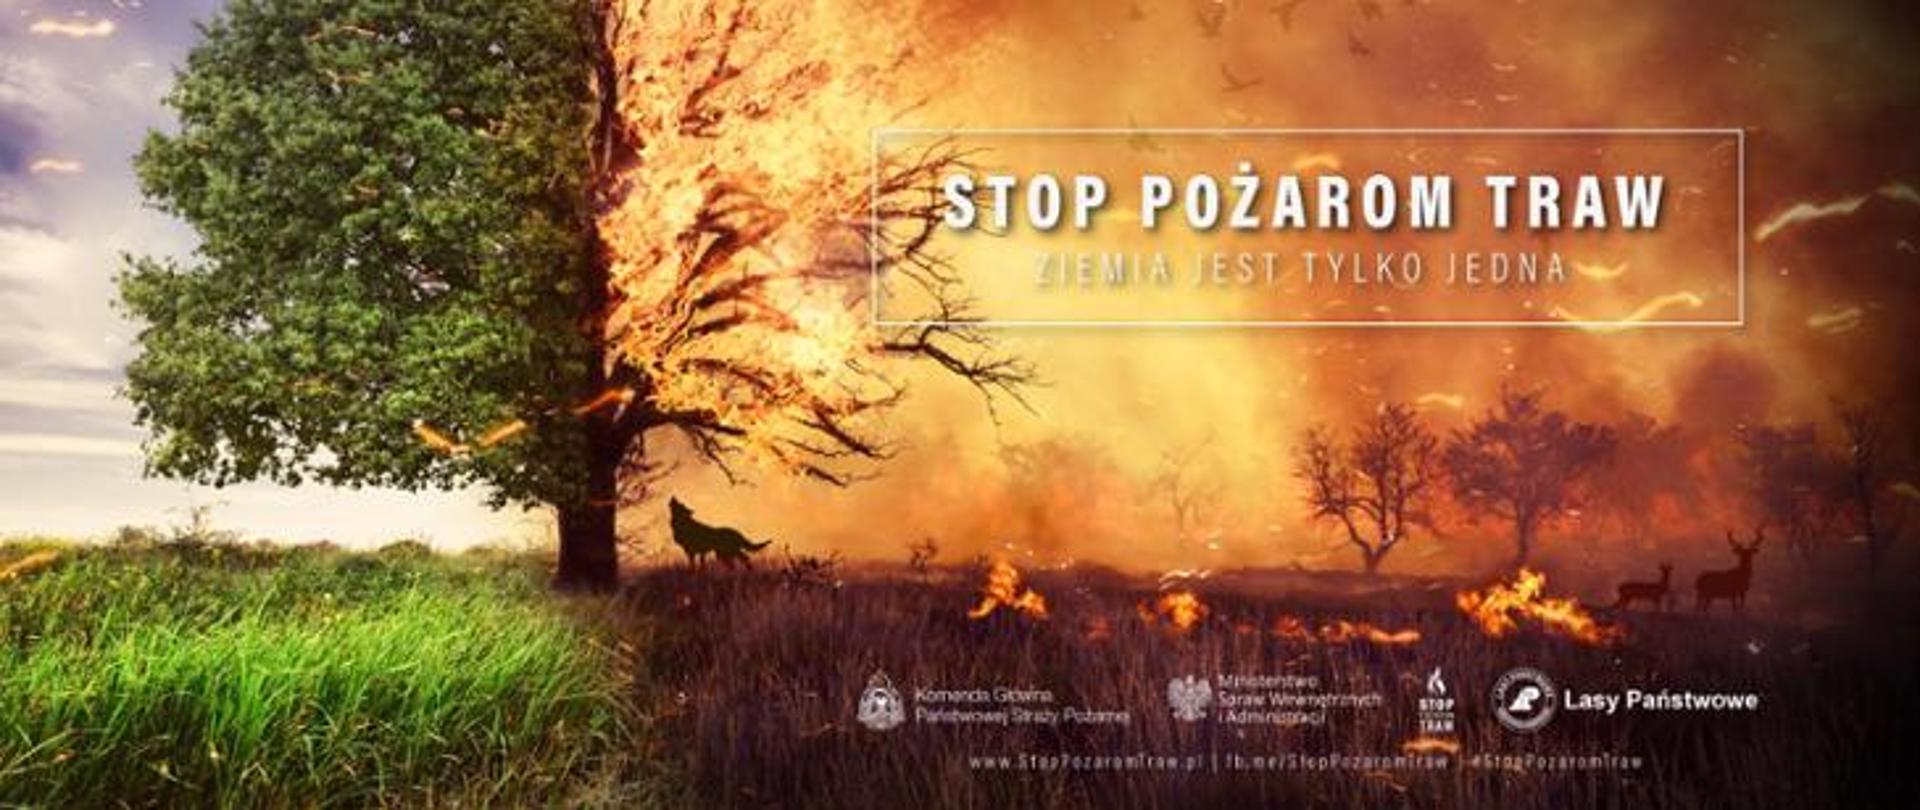 Plakat promujący akcję "STOP pożarom traw"